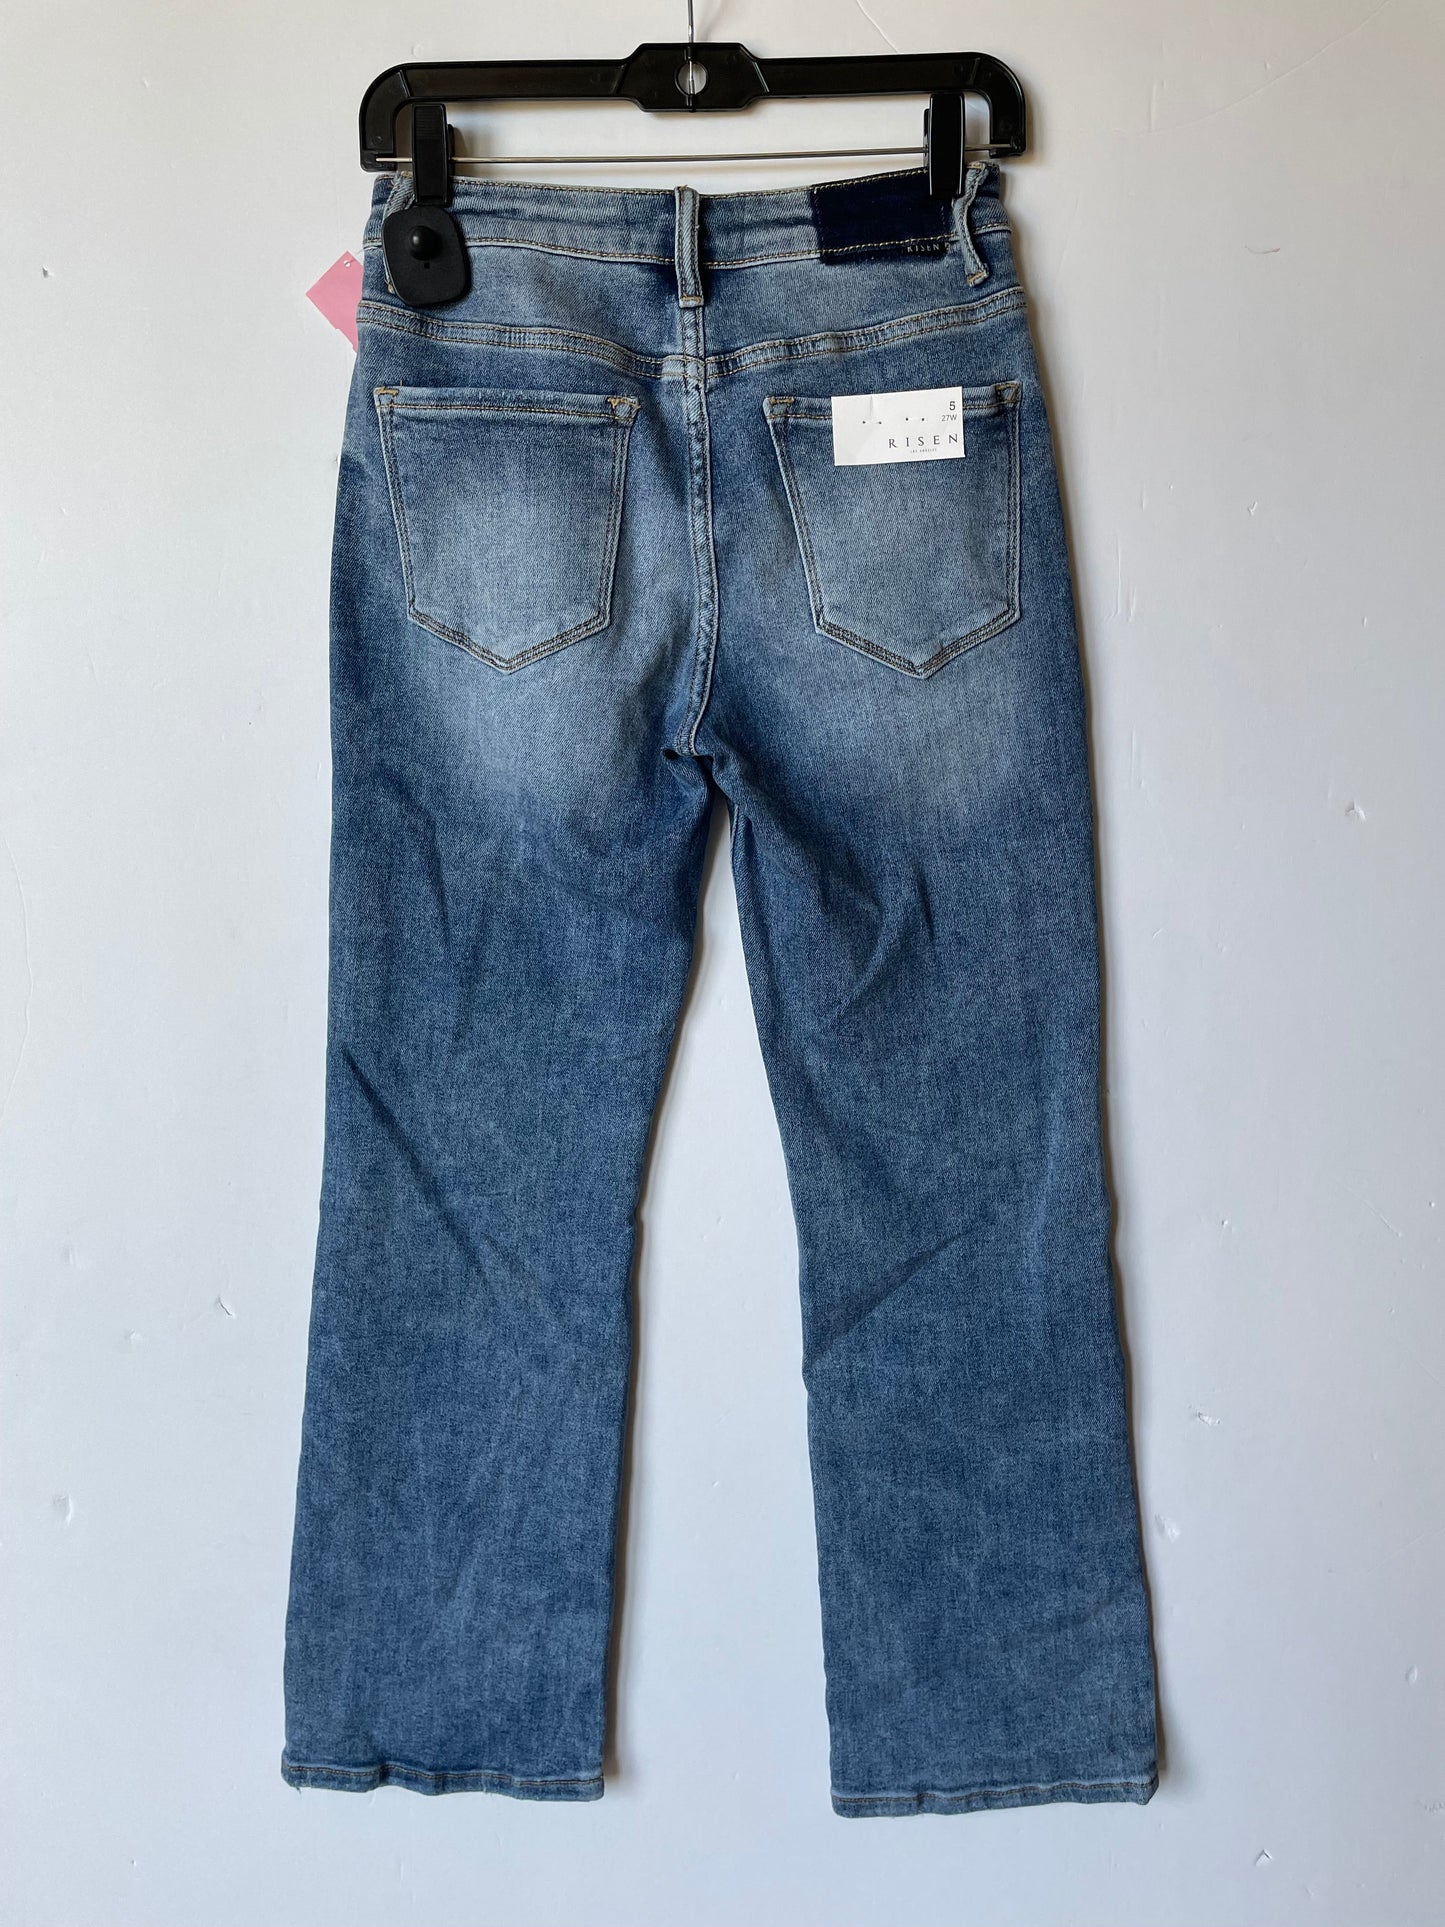 Blue Denim Jeans Boot Cut Risen, Size 6